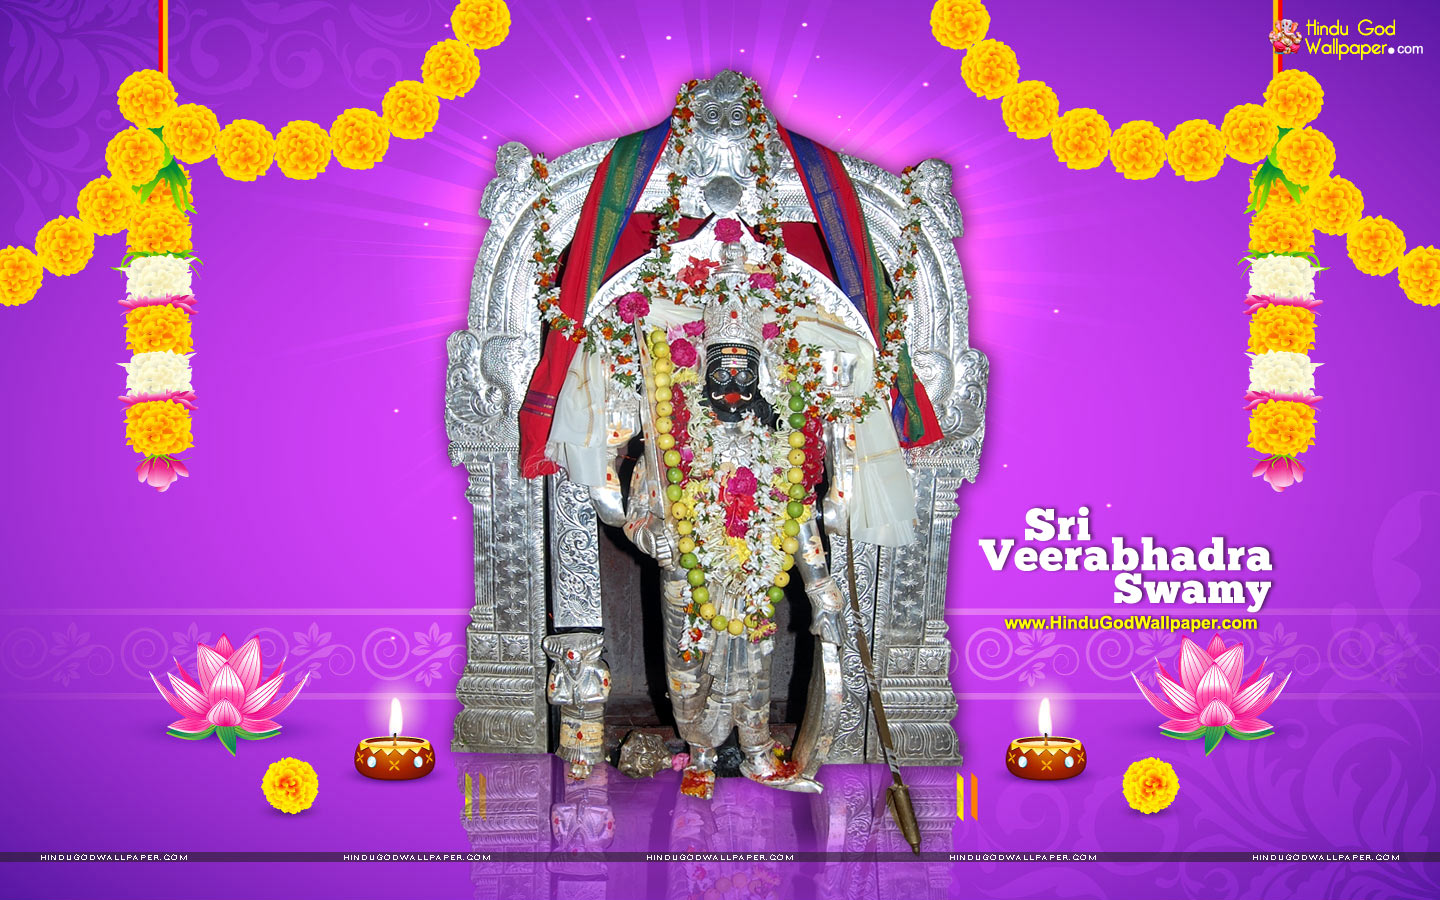 Lord Veerabhadra